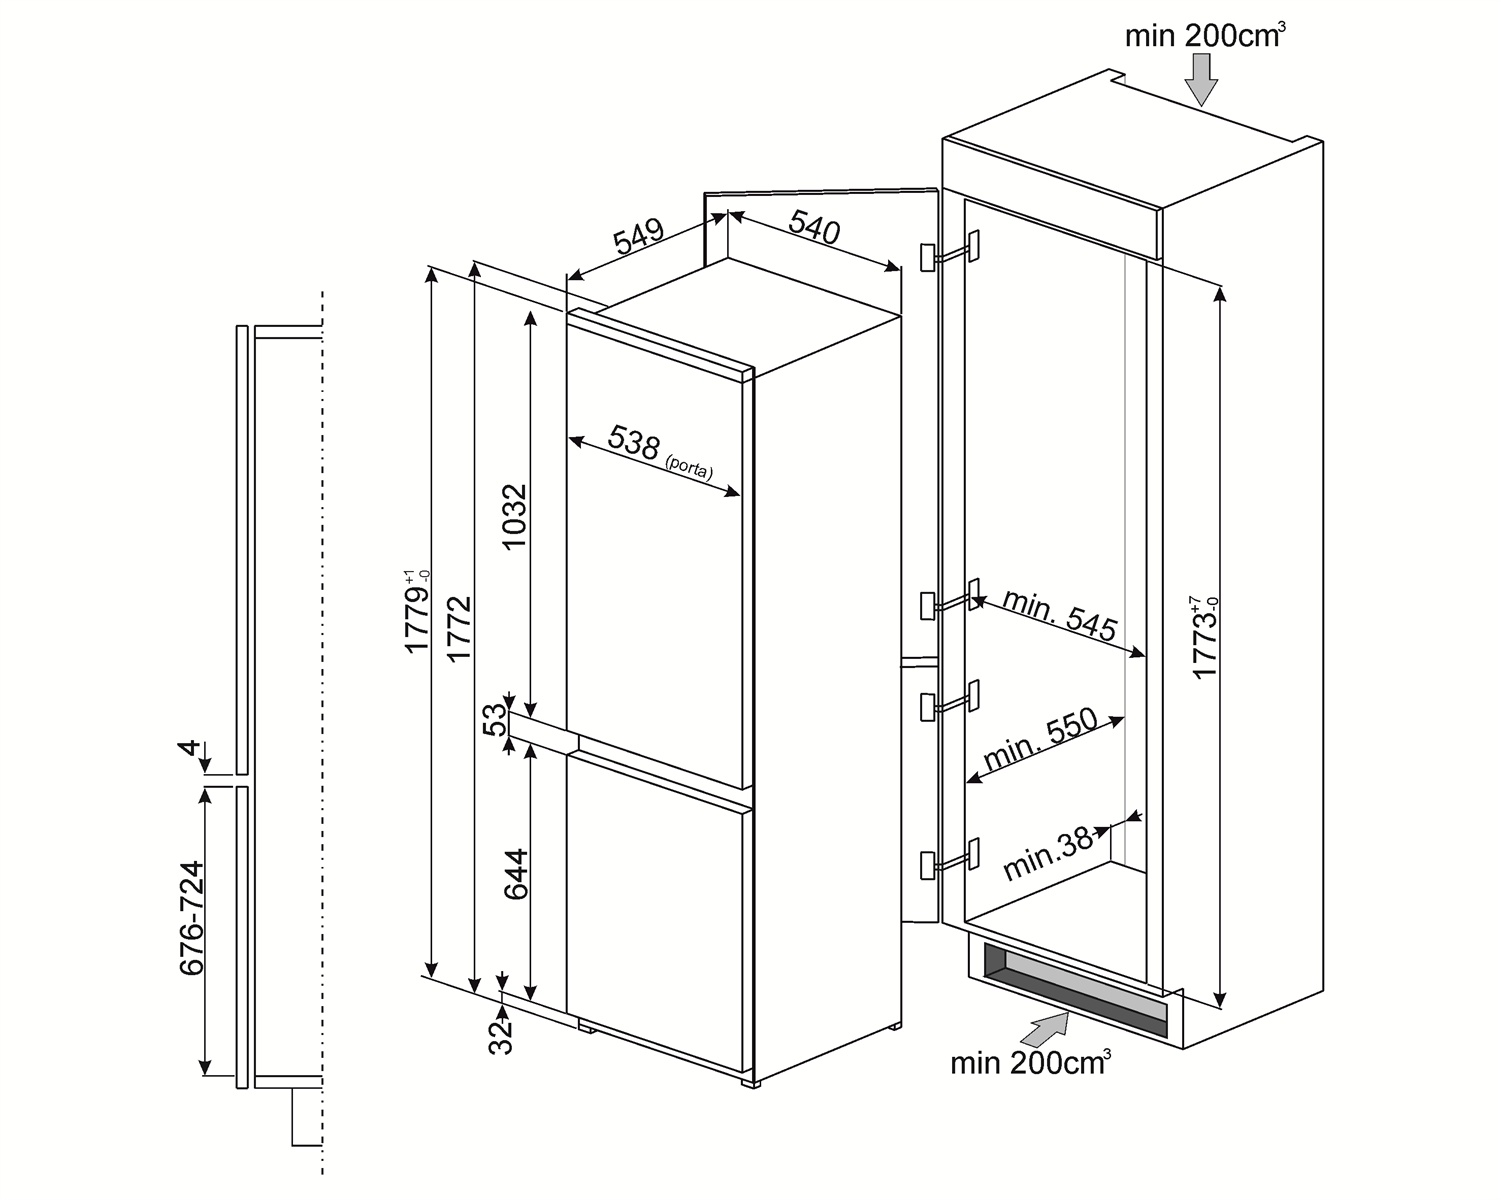 Maattekening SMEG koelkast inbouw C3170P1